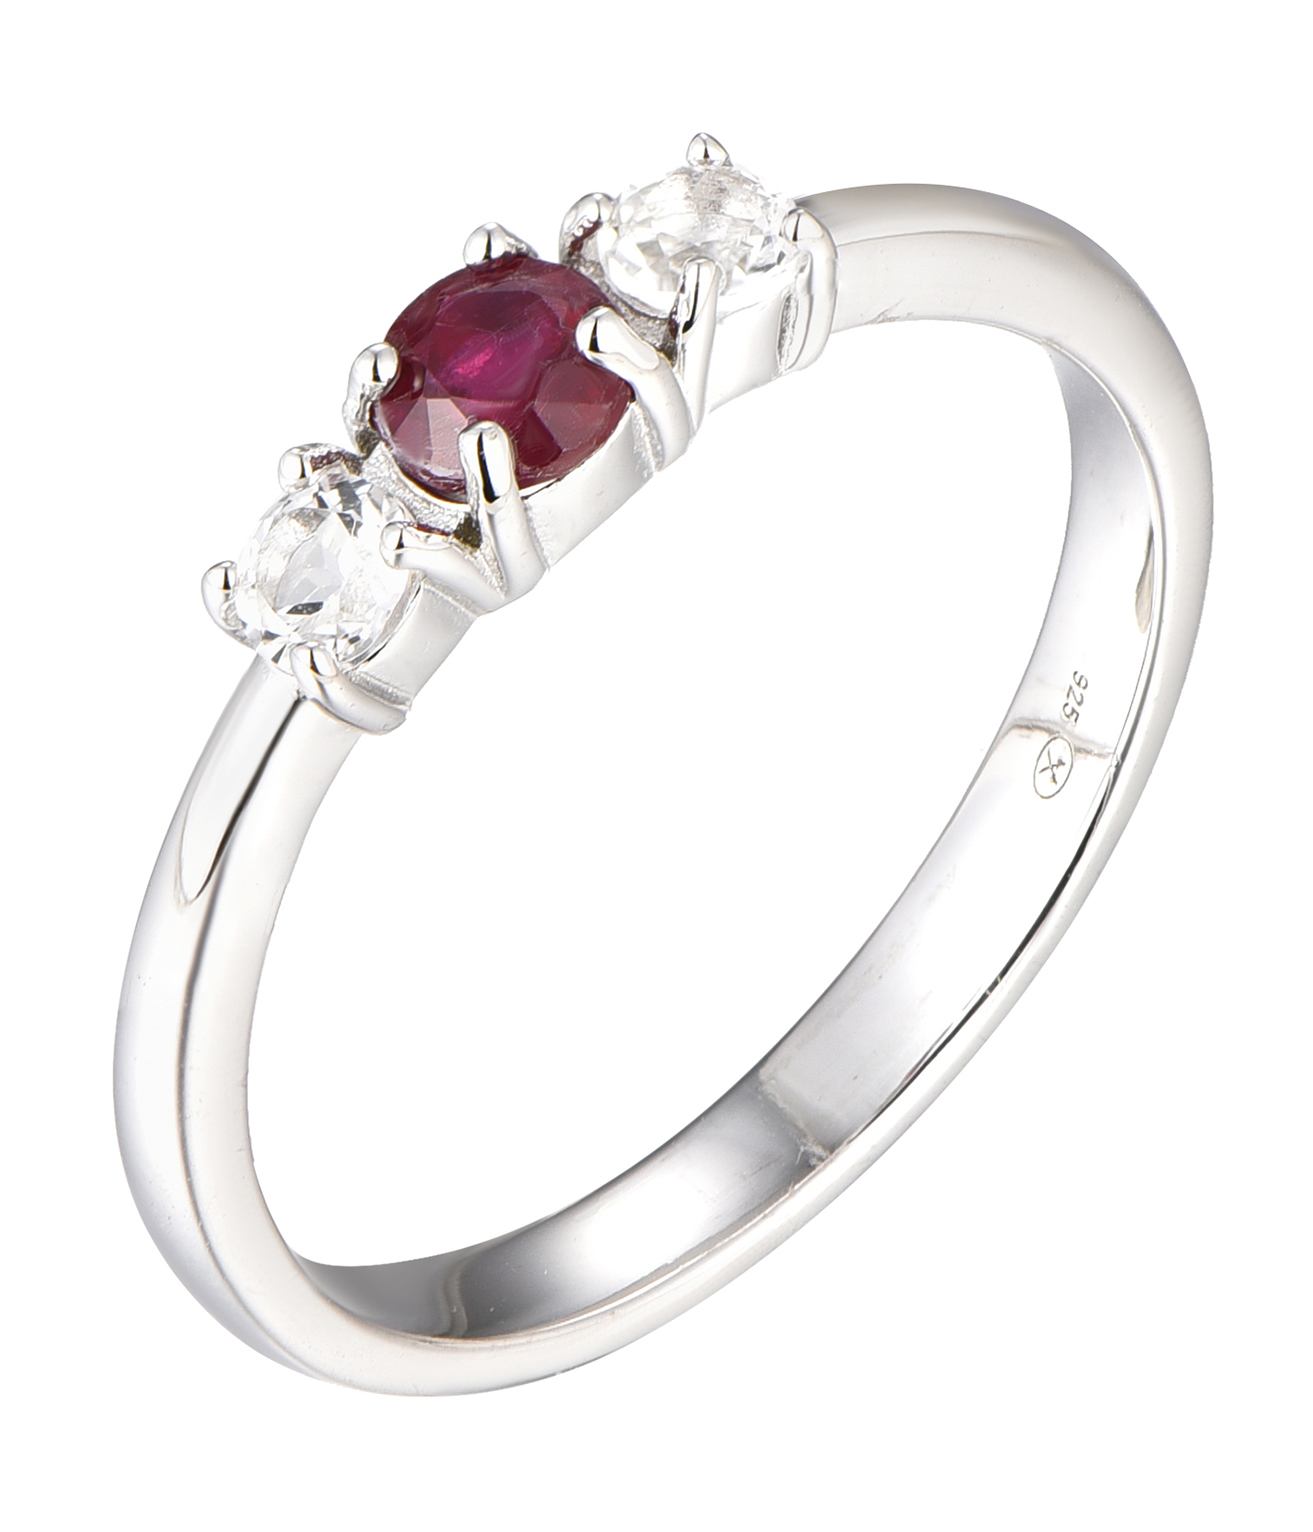 Brilio Silver Blýštivý stříbrný prsten s rubínem Precious Stone SR09003C 56 mm